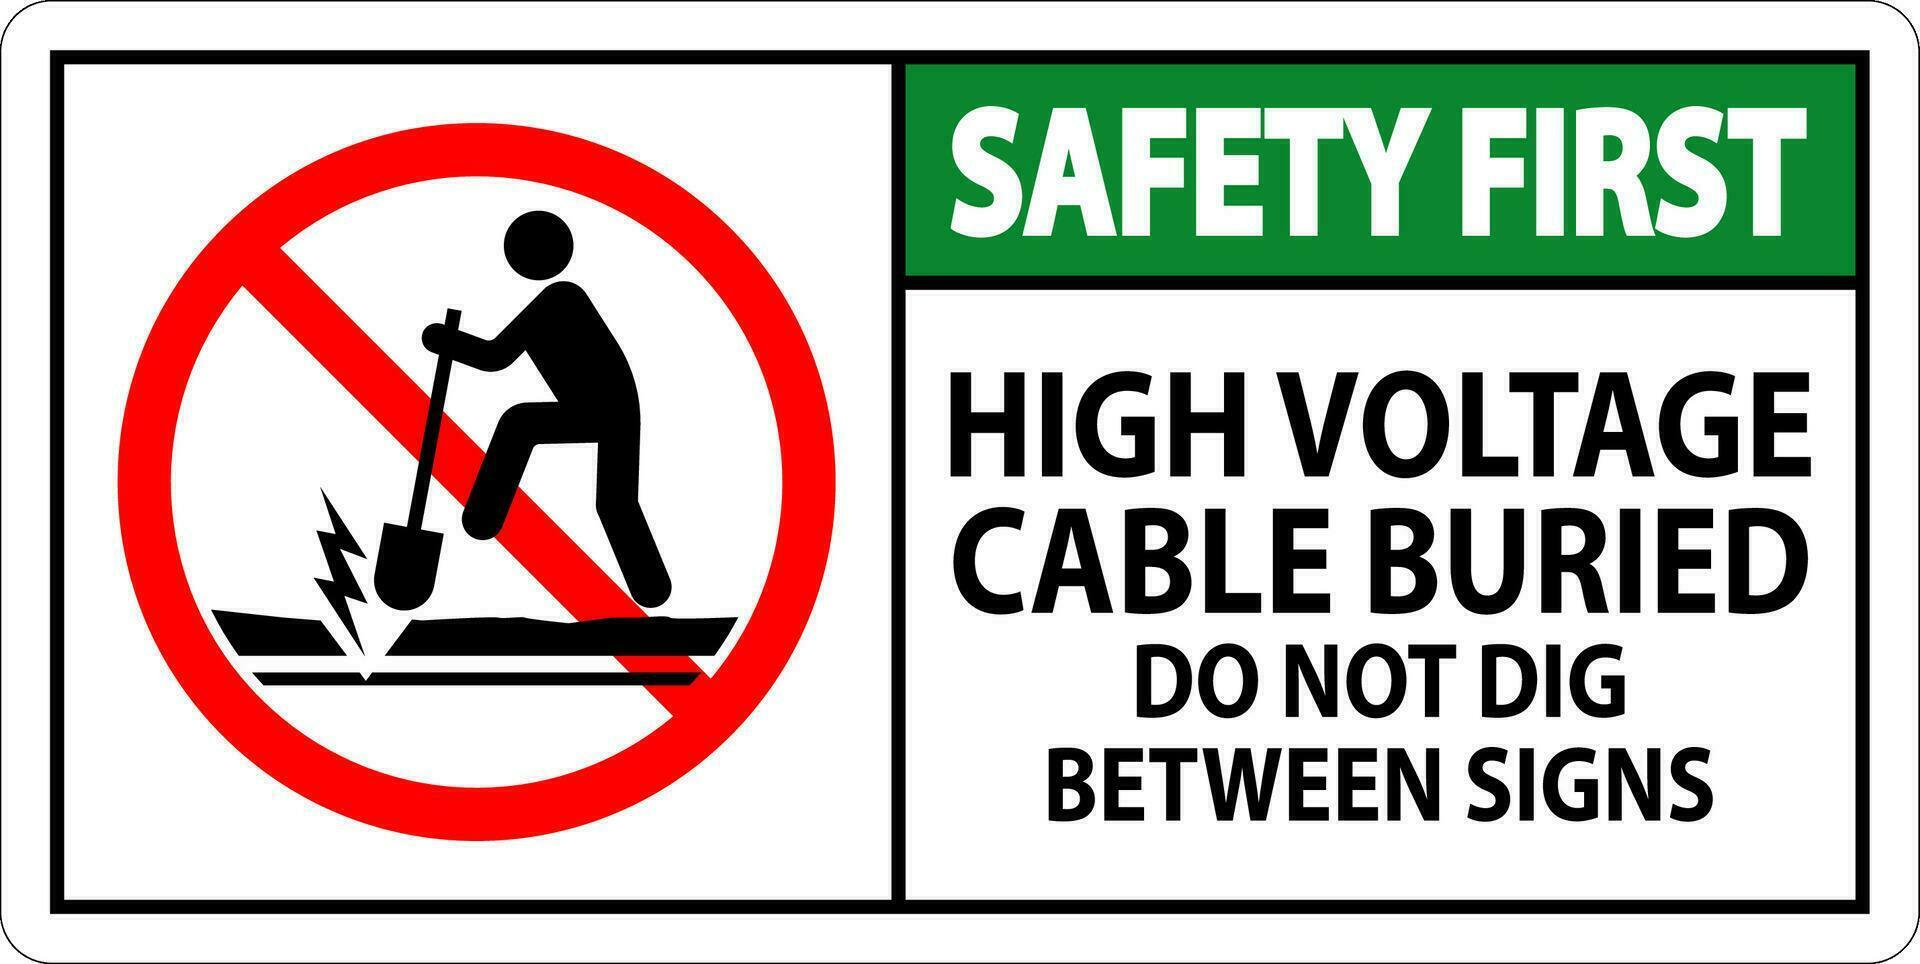 la seguridad primero firmar alto voltaje cable enterrado. hacer no cavar Entre firmar vector